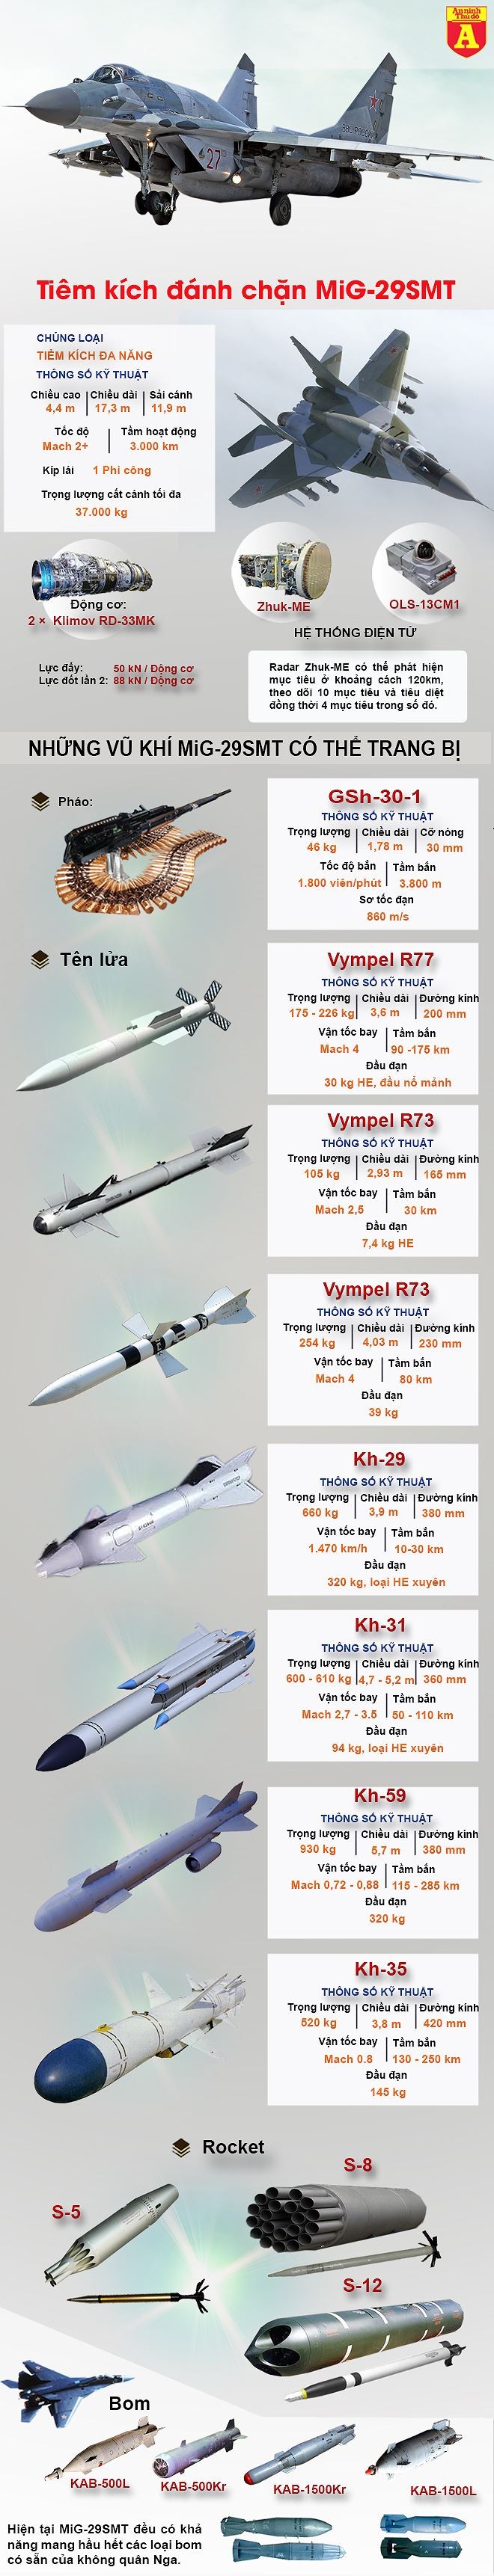 [Infographic] Tiêm kích MiG-29SMT Nga sang Syria chưa kịp xuất kích tại Syria đã vội rút về ảnh 2